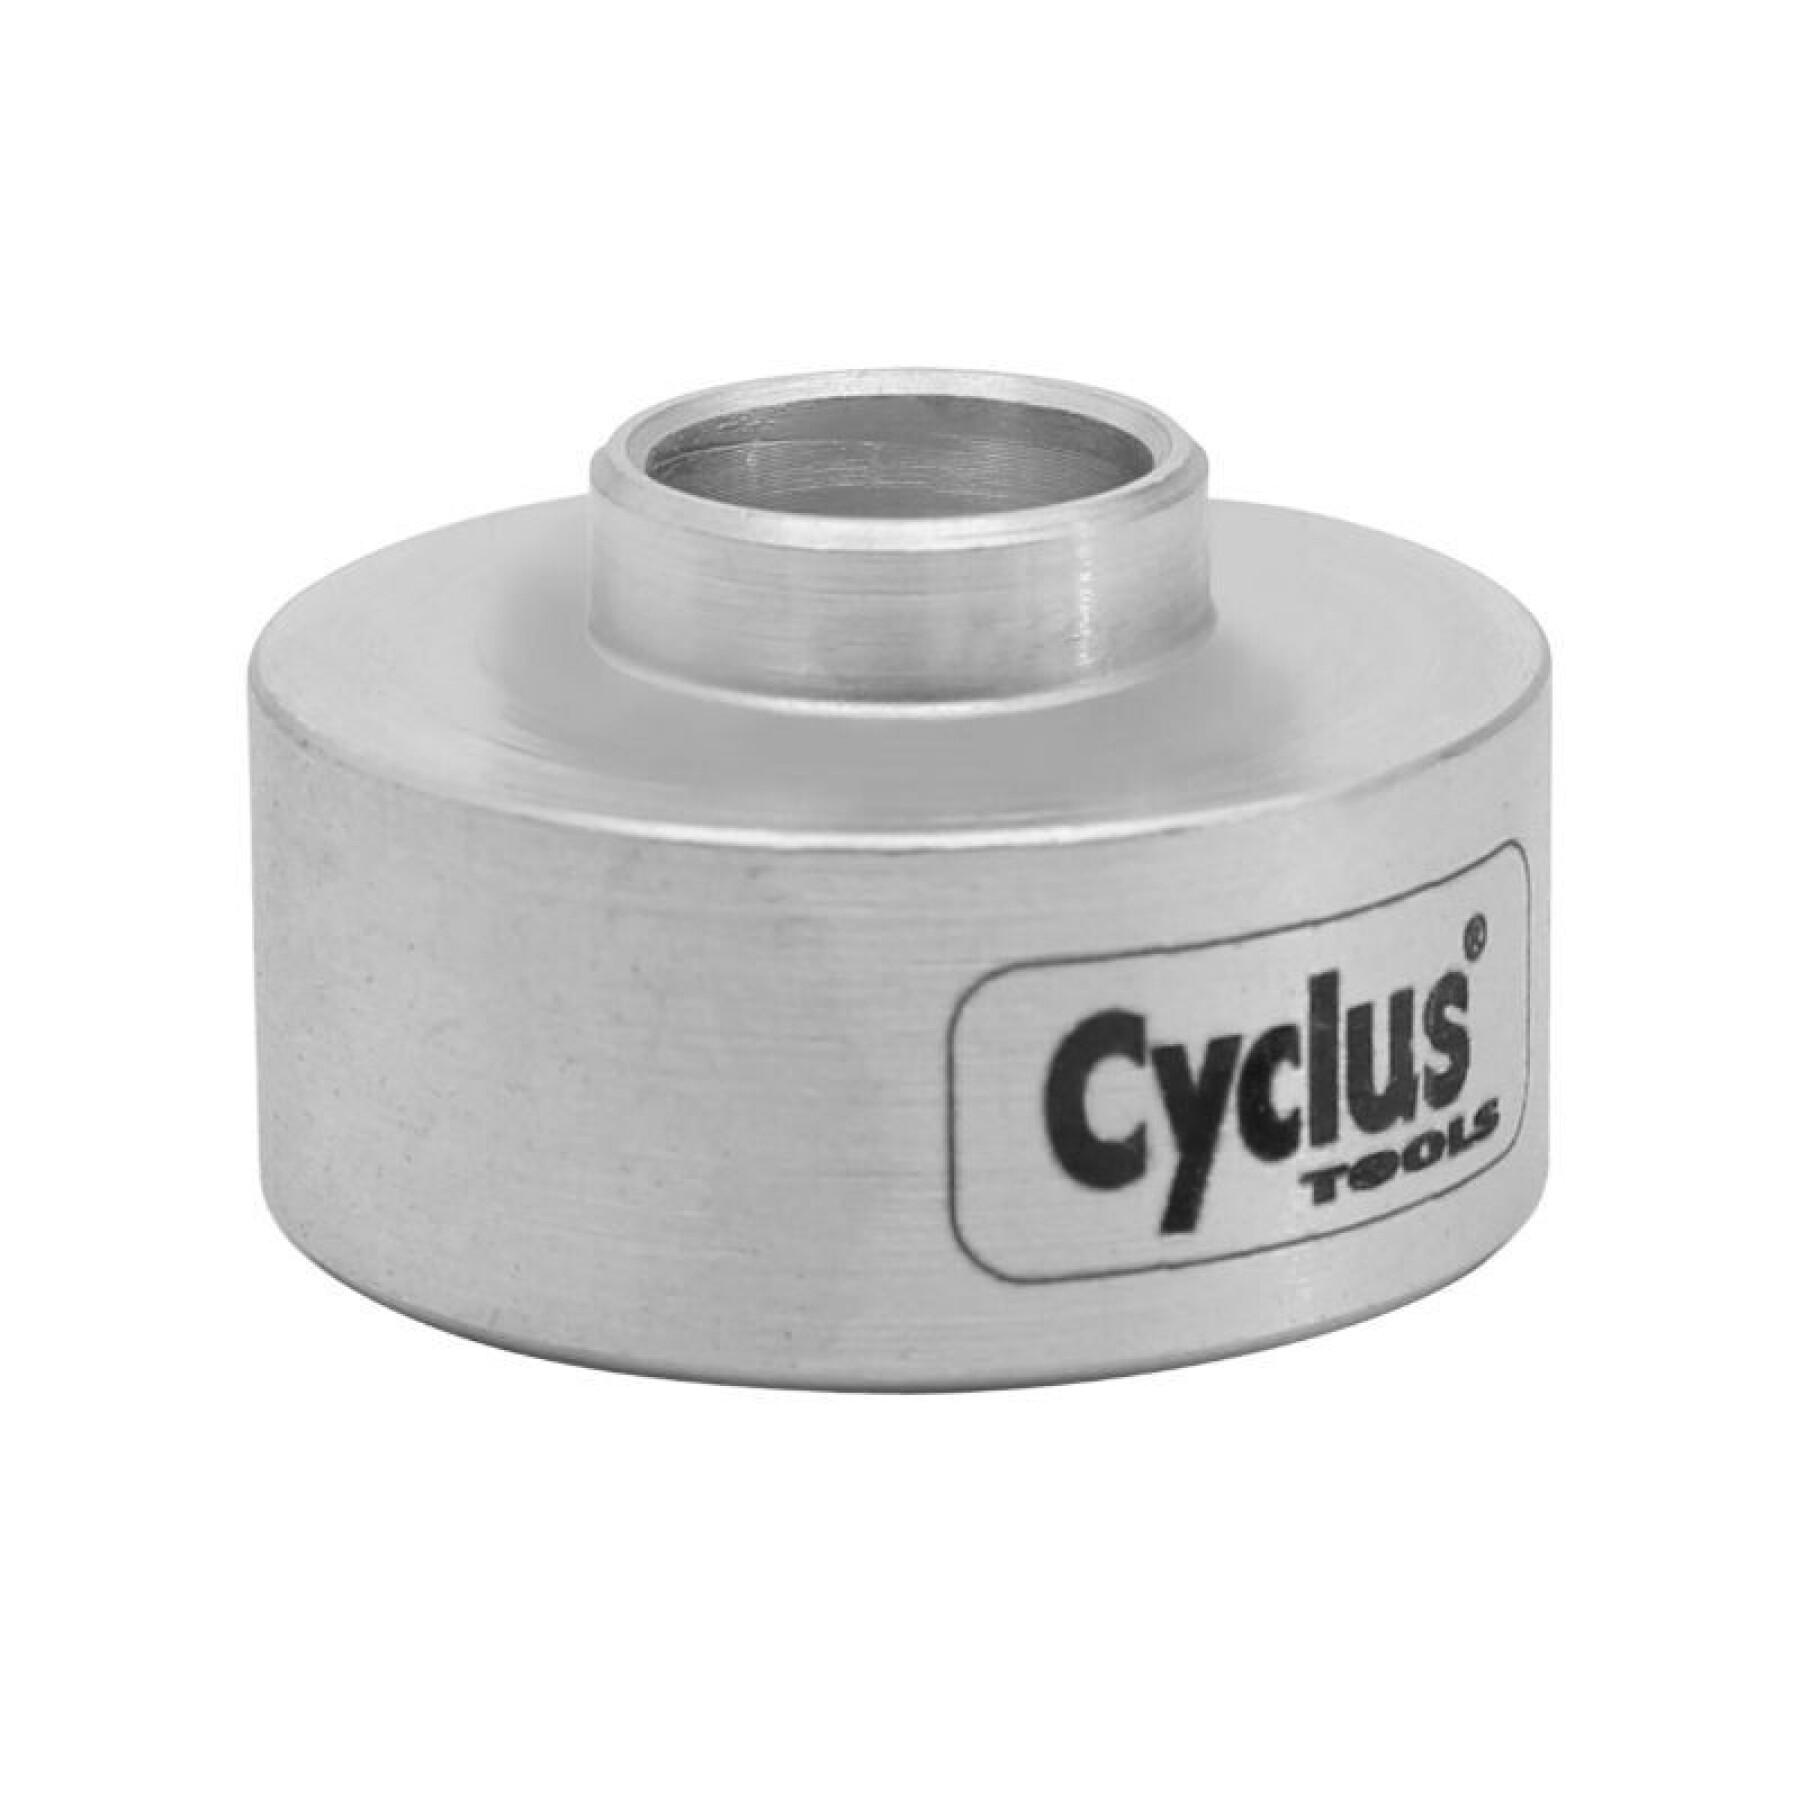 Outil pro support roulement à utiliser avec le presse roulement Cyclus ref 180126